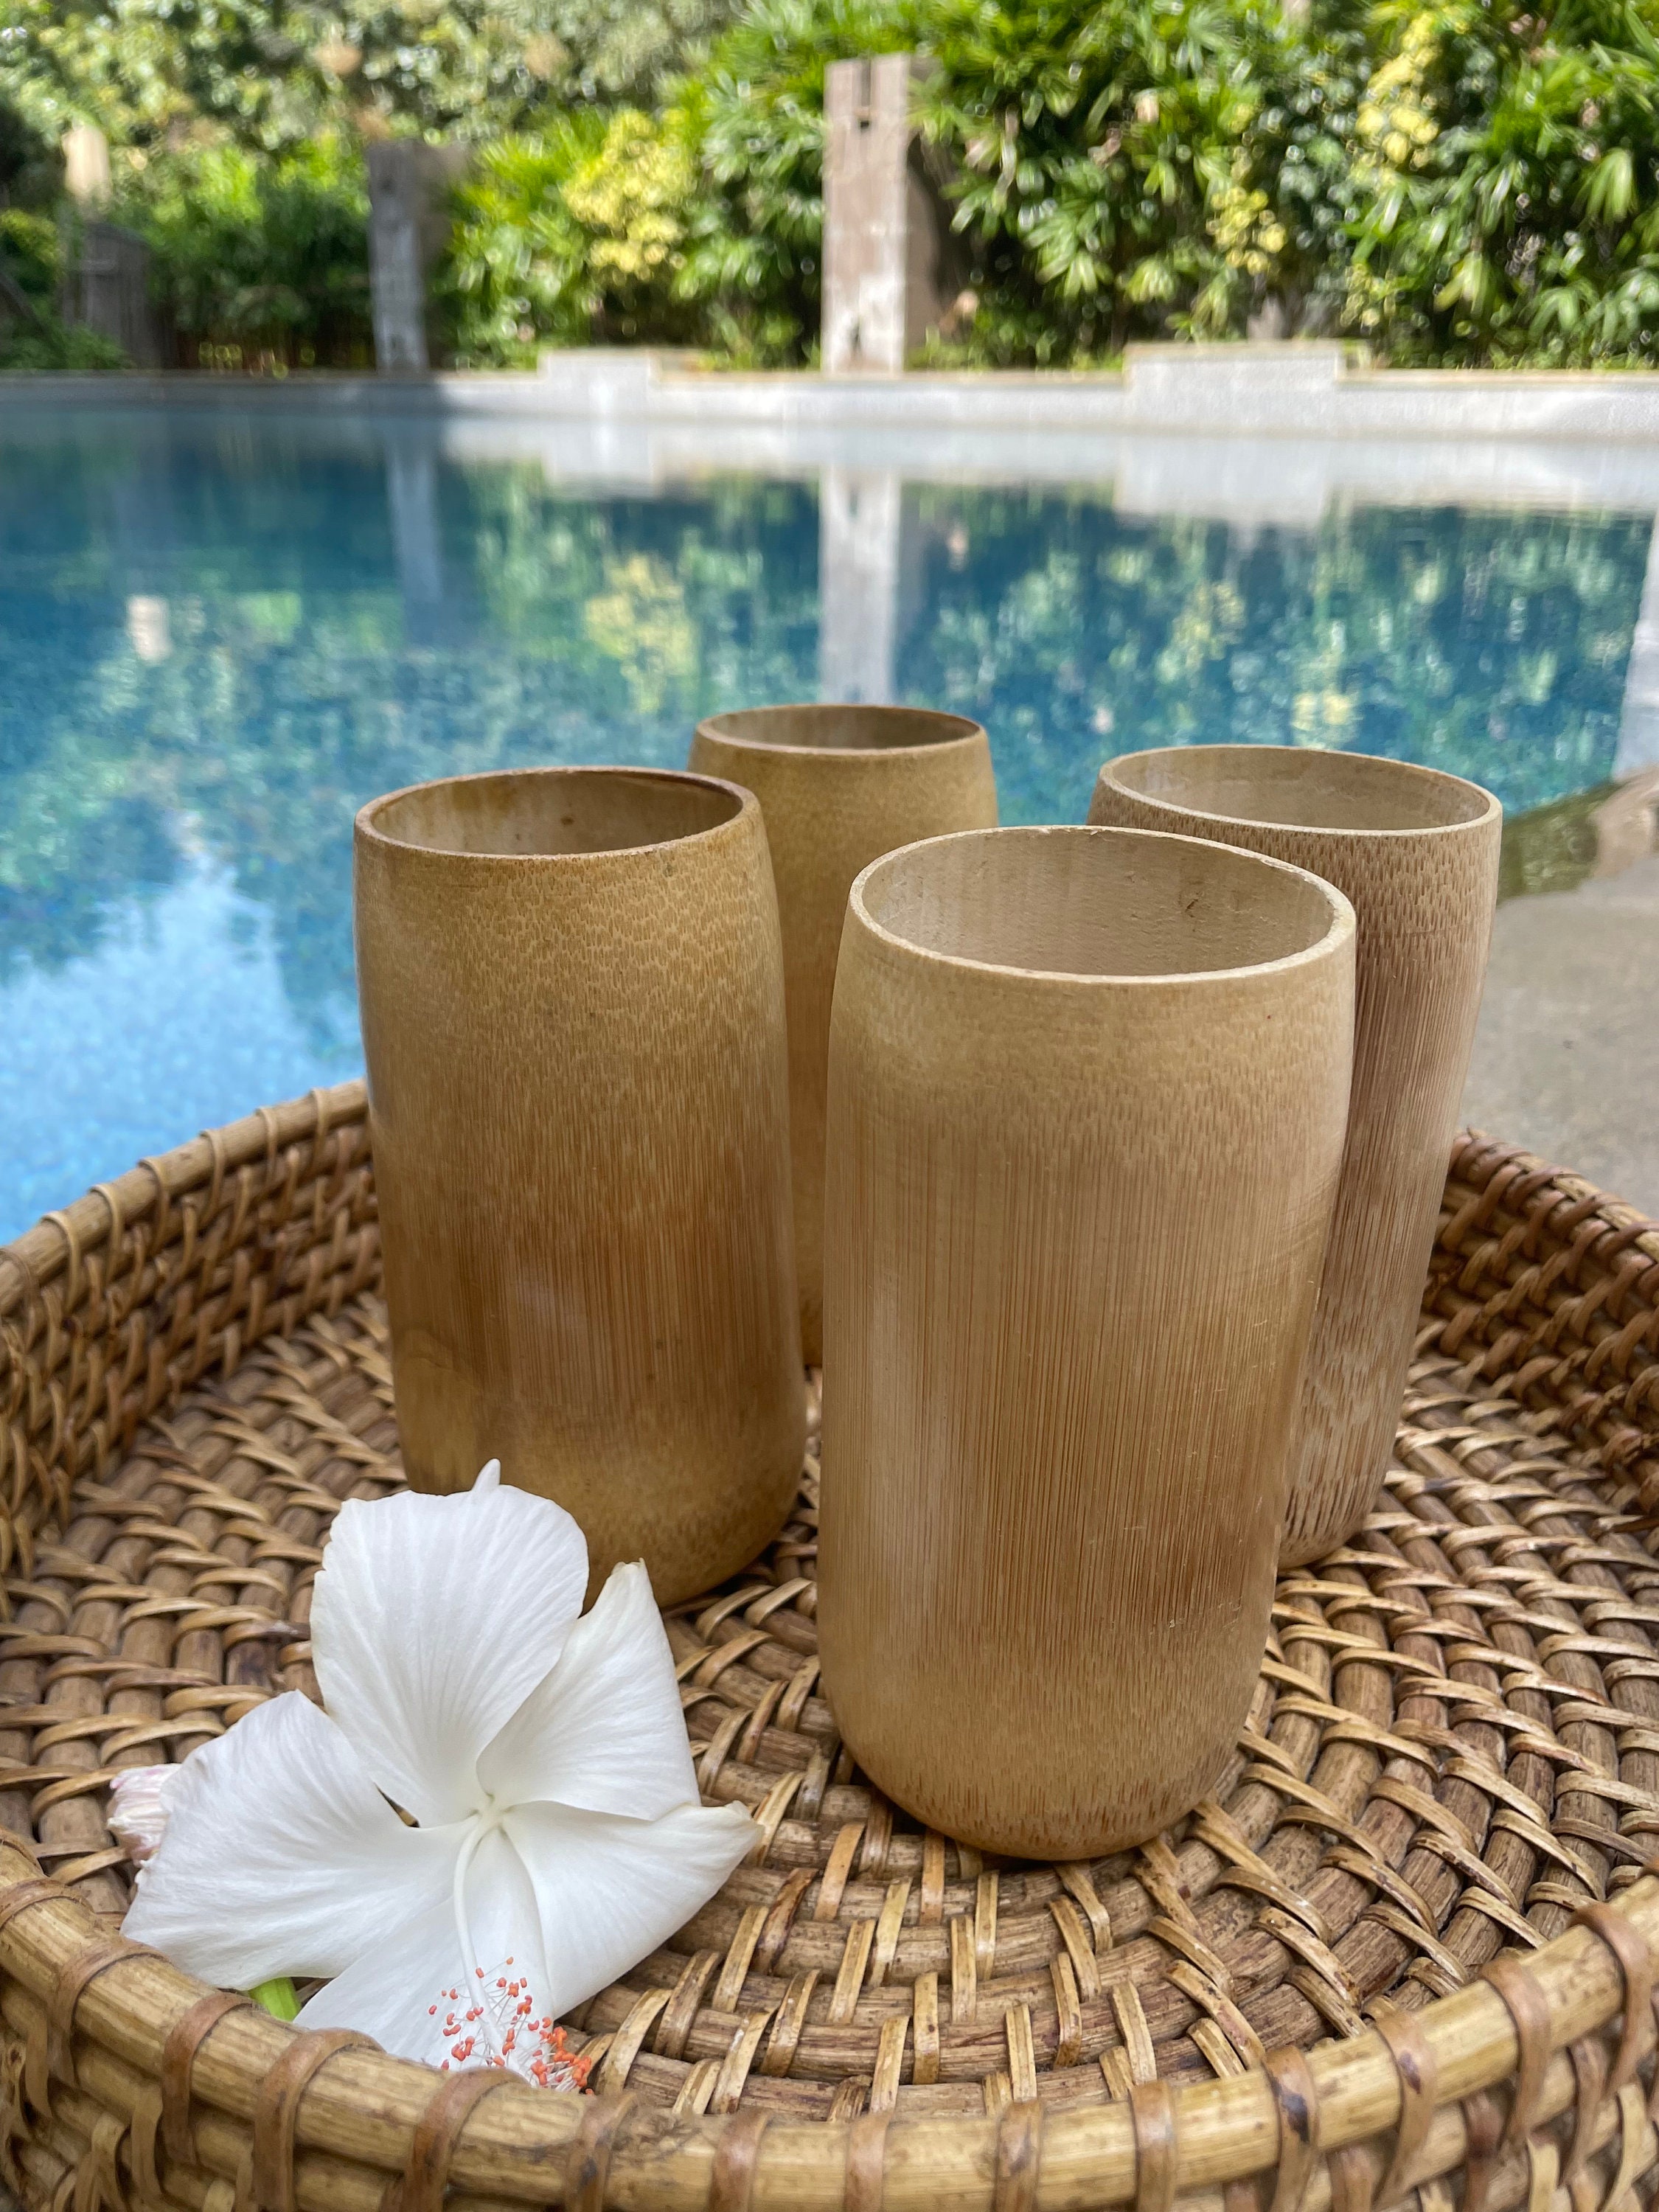 Alfombras de baño de bambú — Sostenibles, elegantes y naturales